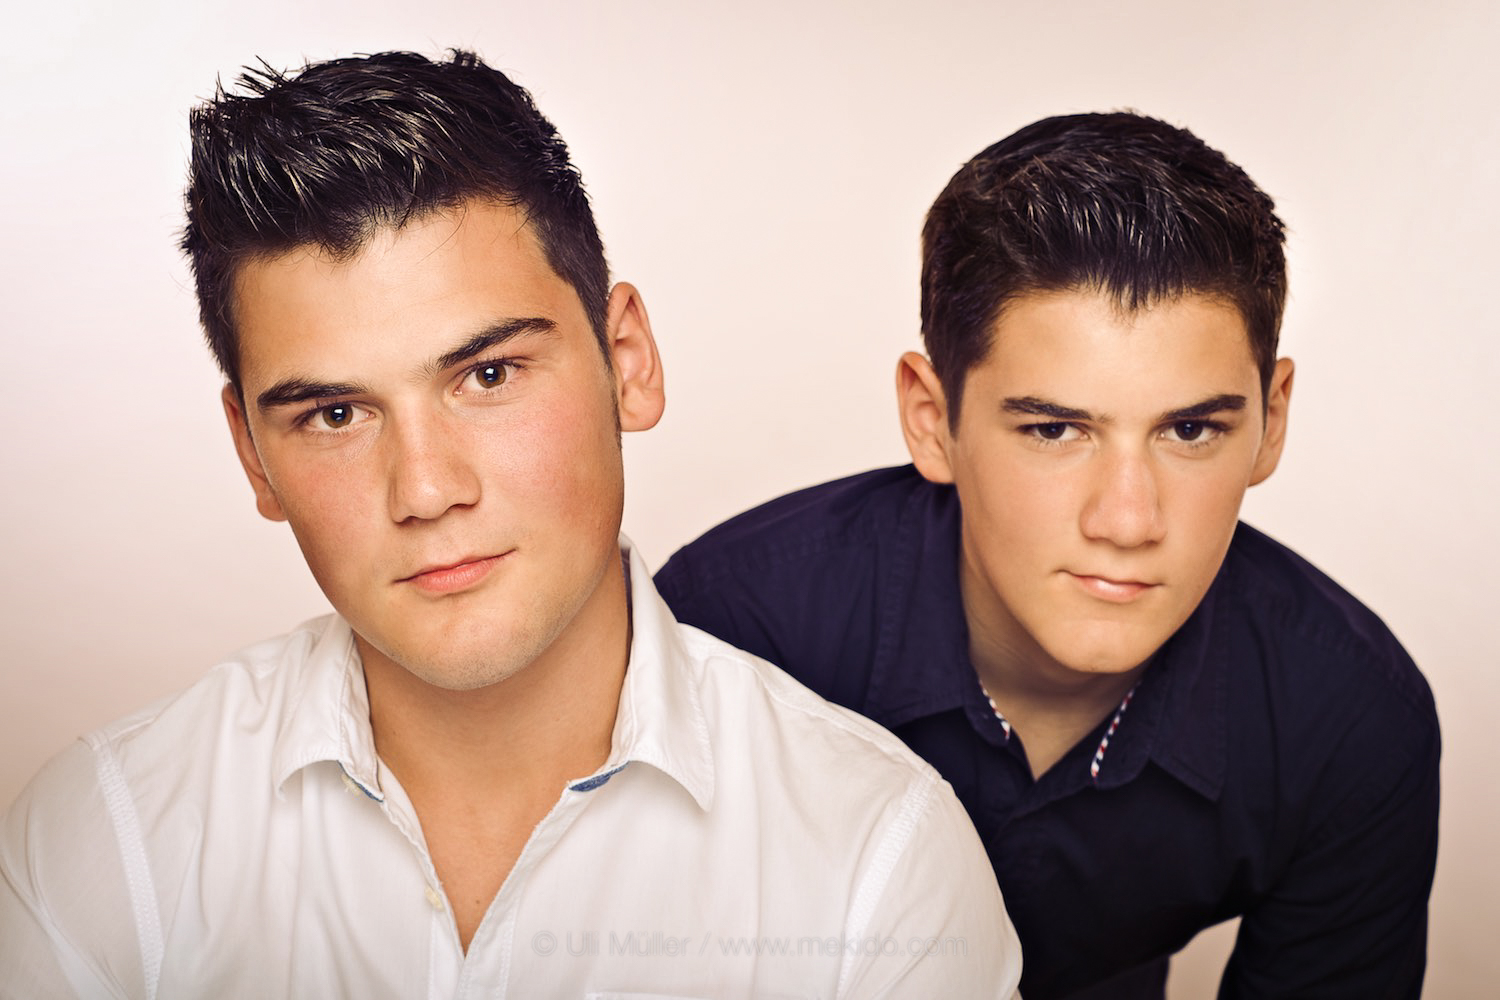 Doppel-Portrait zweier junger Männer als Werbefoto für eine Anzeigenschaltung von einem Friseursalon.